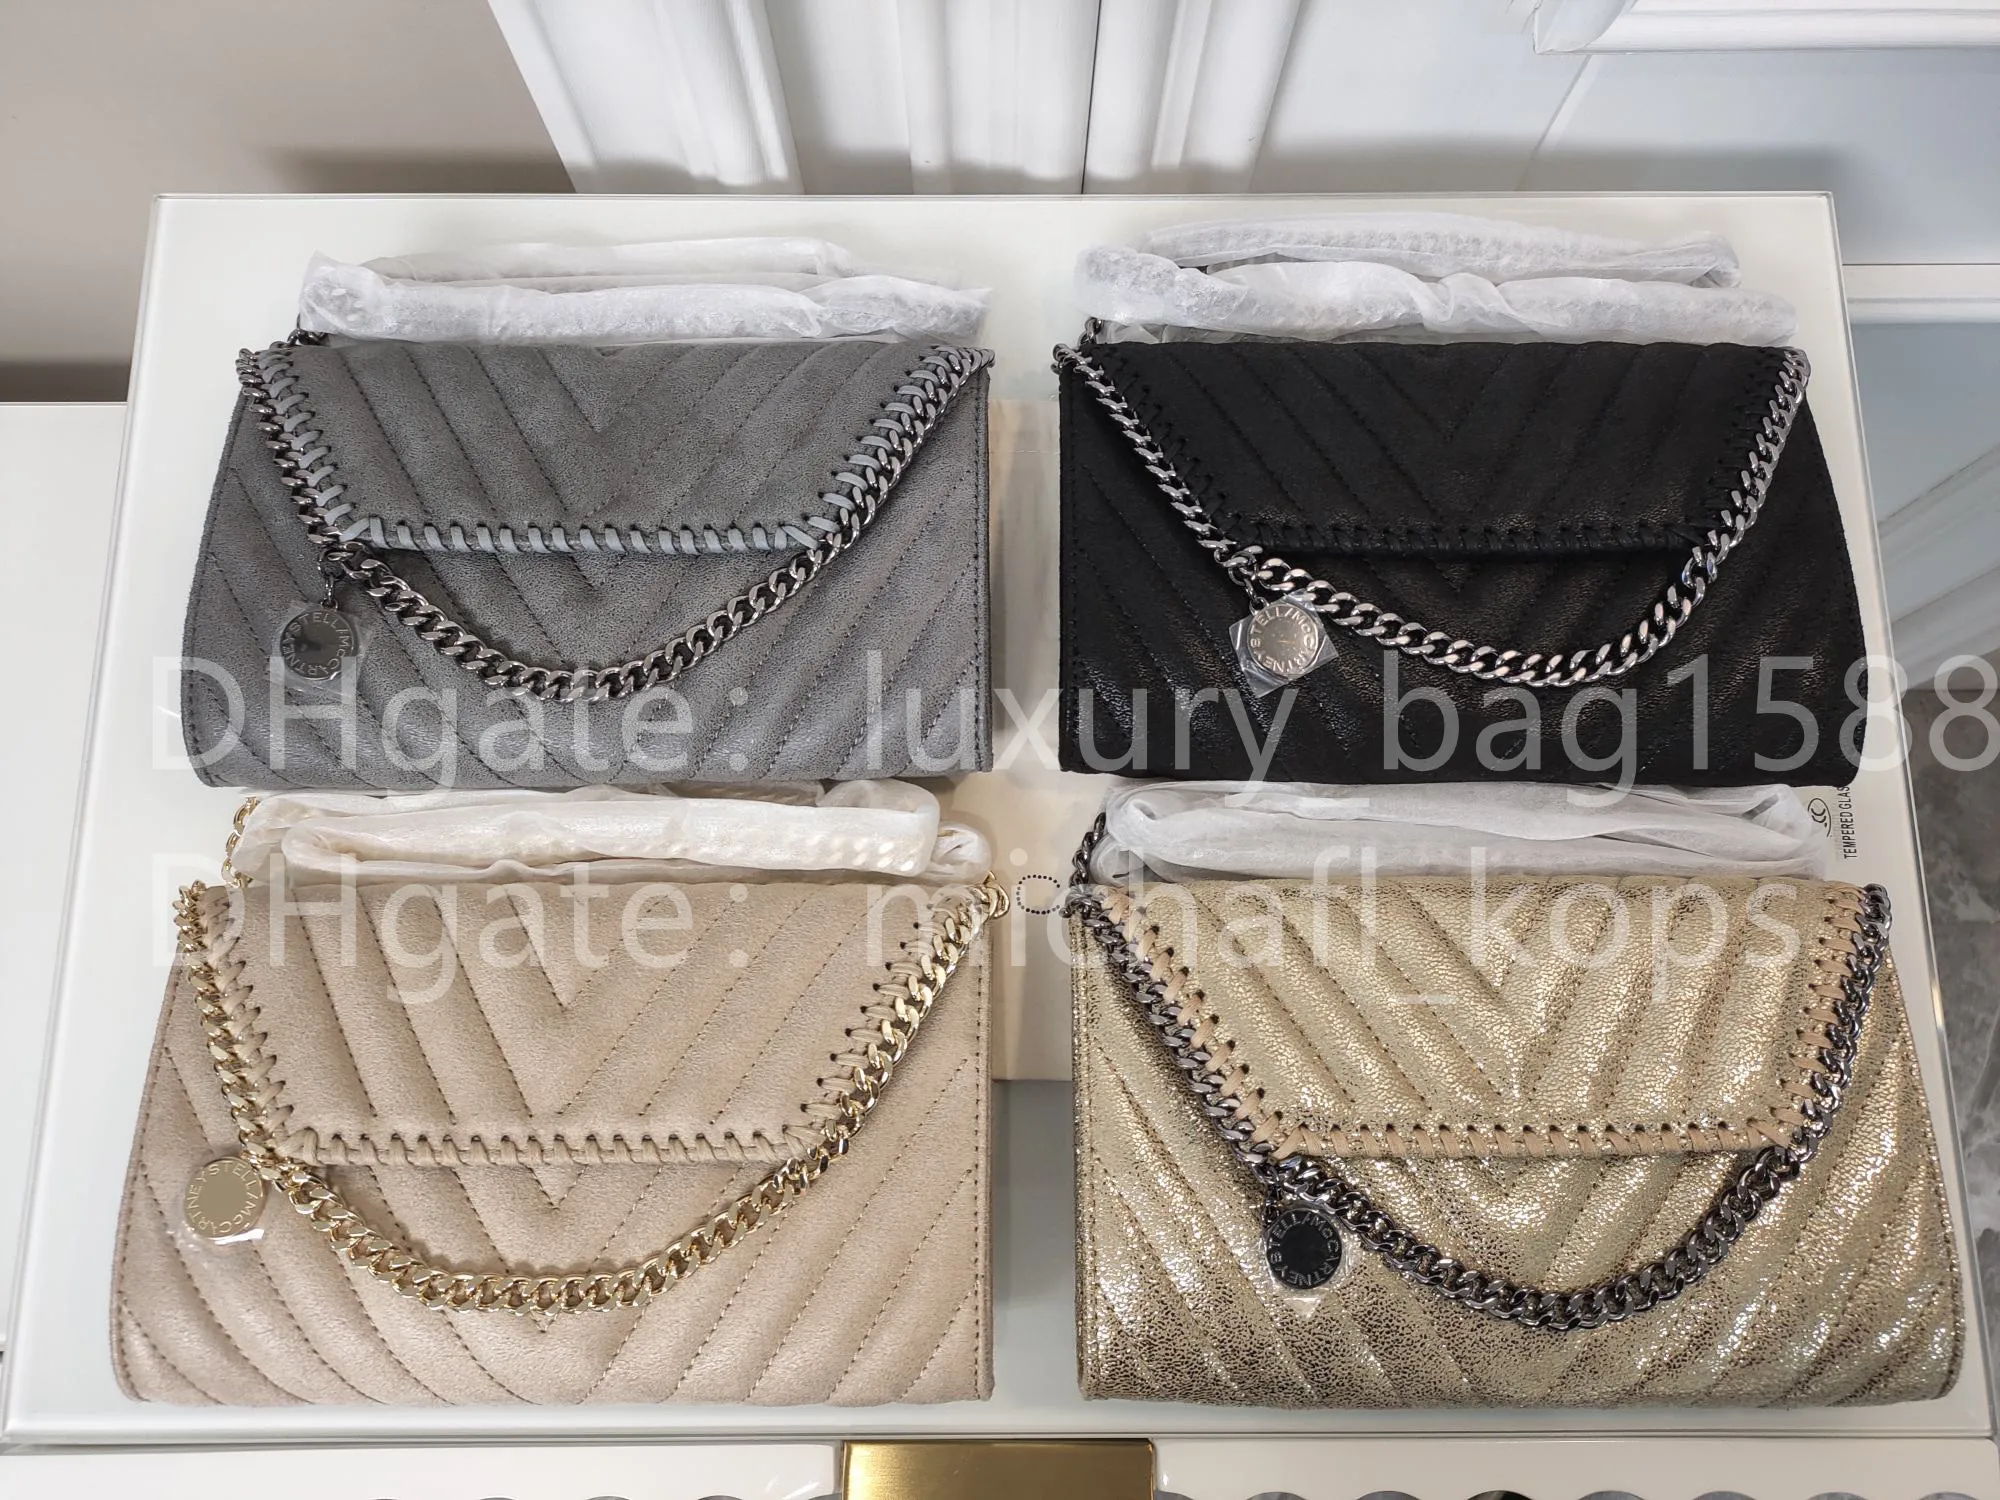 ستيلا مكارتني المرأة الأزياء حقيبة كاميرا حزام حقيبة الكتف عالية الجودة حقيبة يد جلدية PVC Luxury_Bag1588 669YU